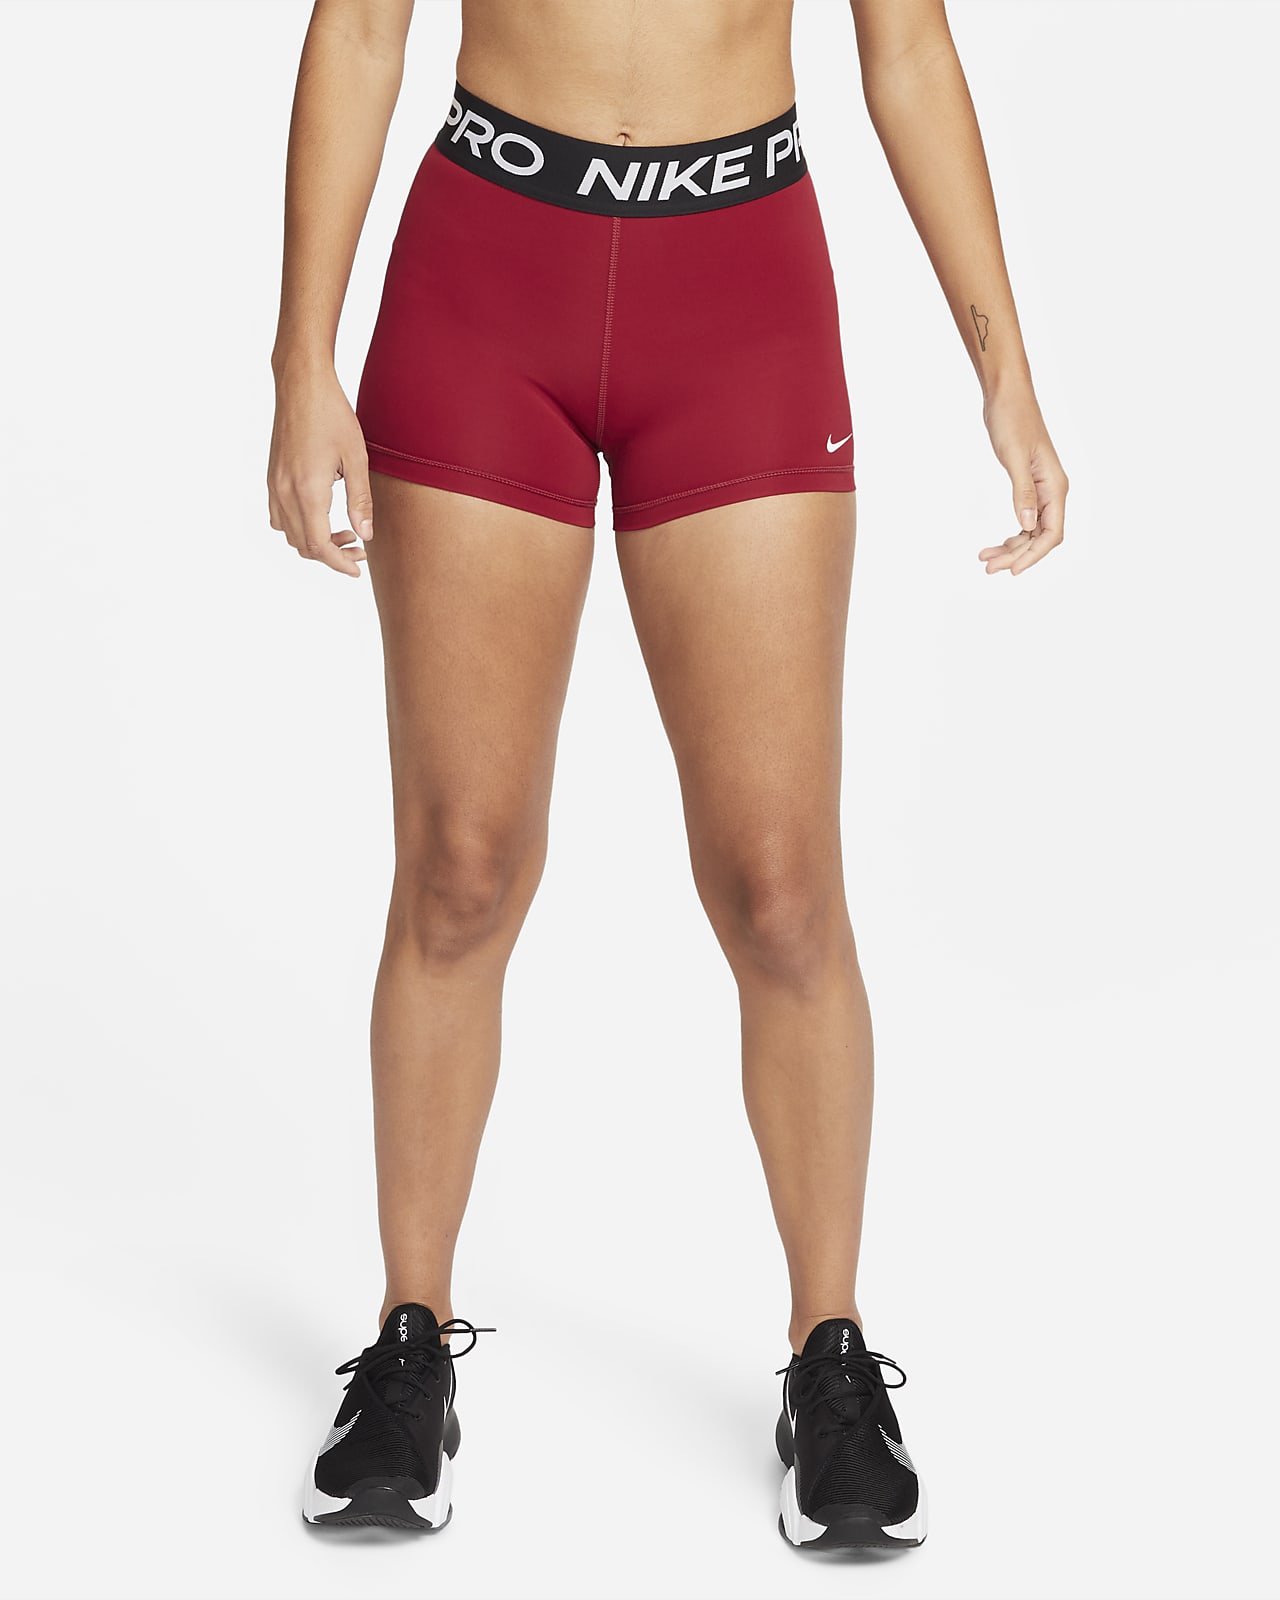 Shorts Nike Pro 7,5 cm för kvinnor